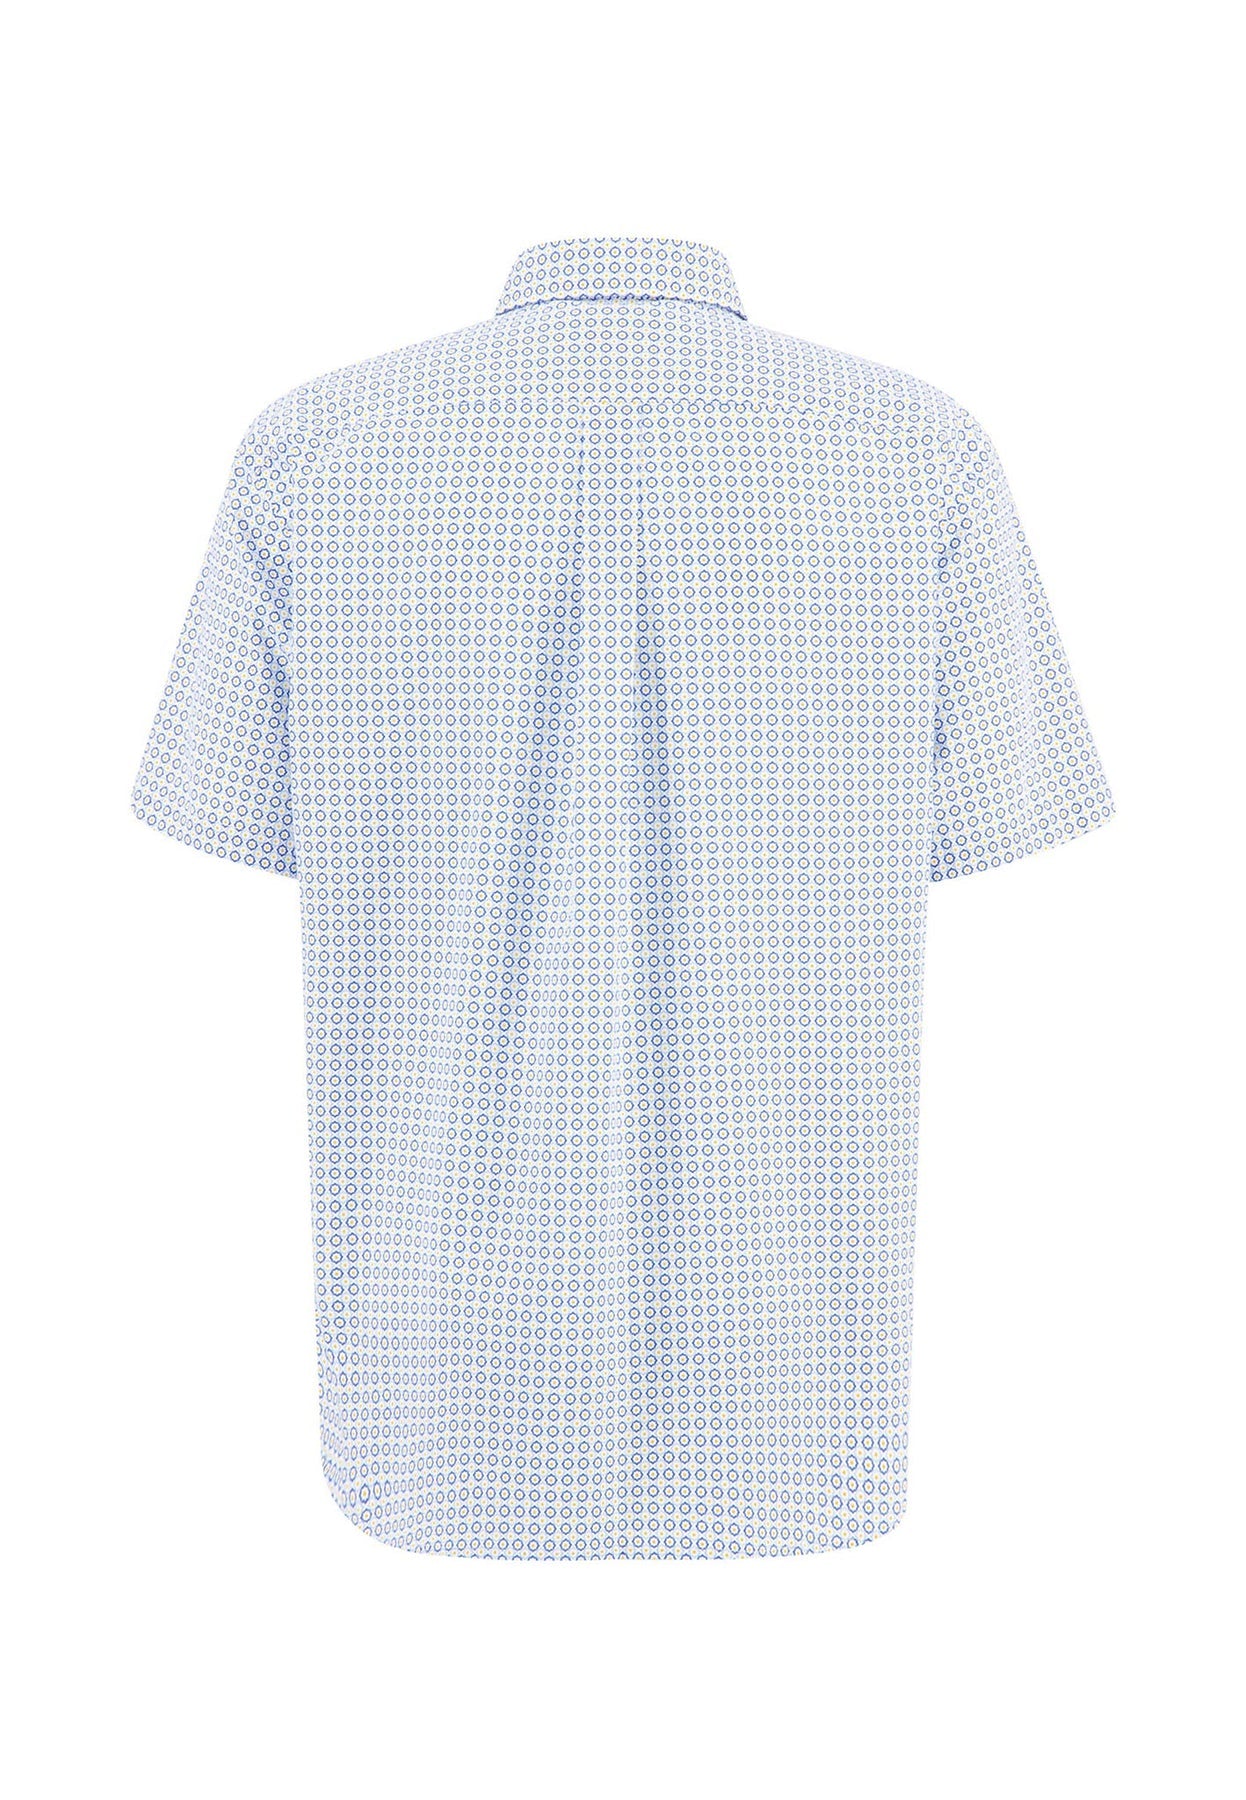 Fynch Hatton SS Button-Down Shirt - Soft Sun